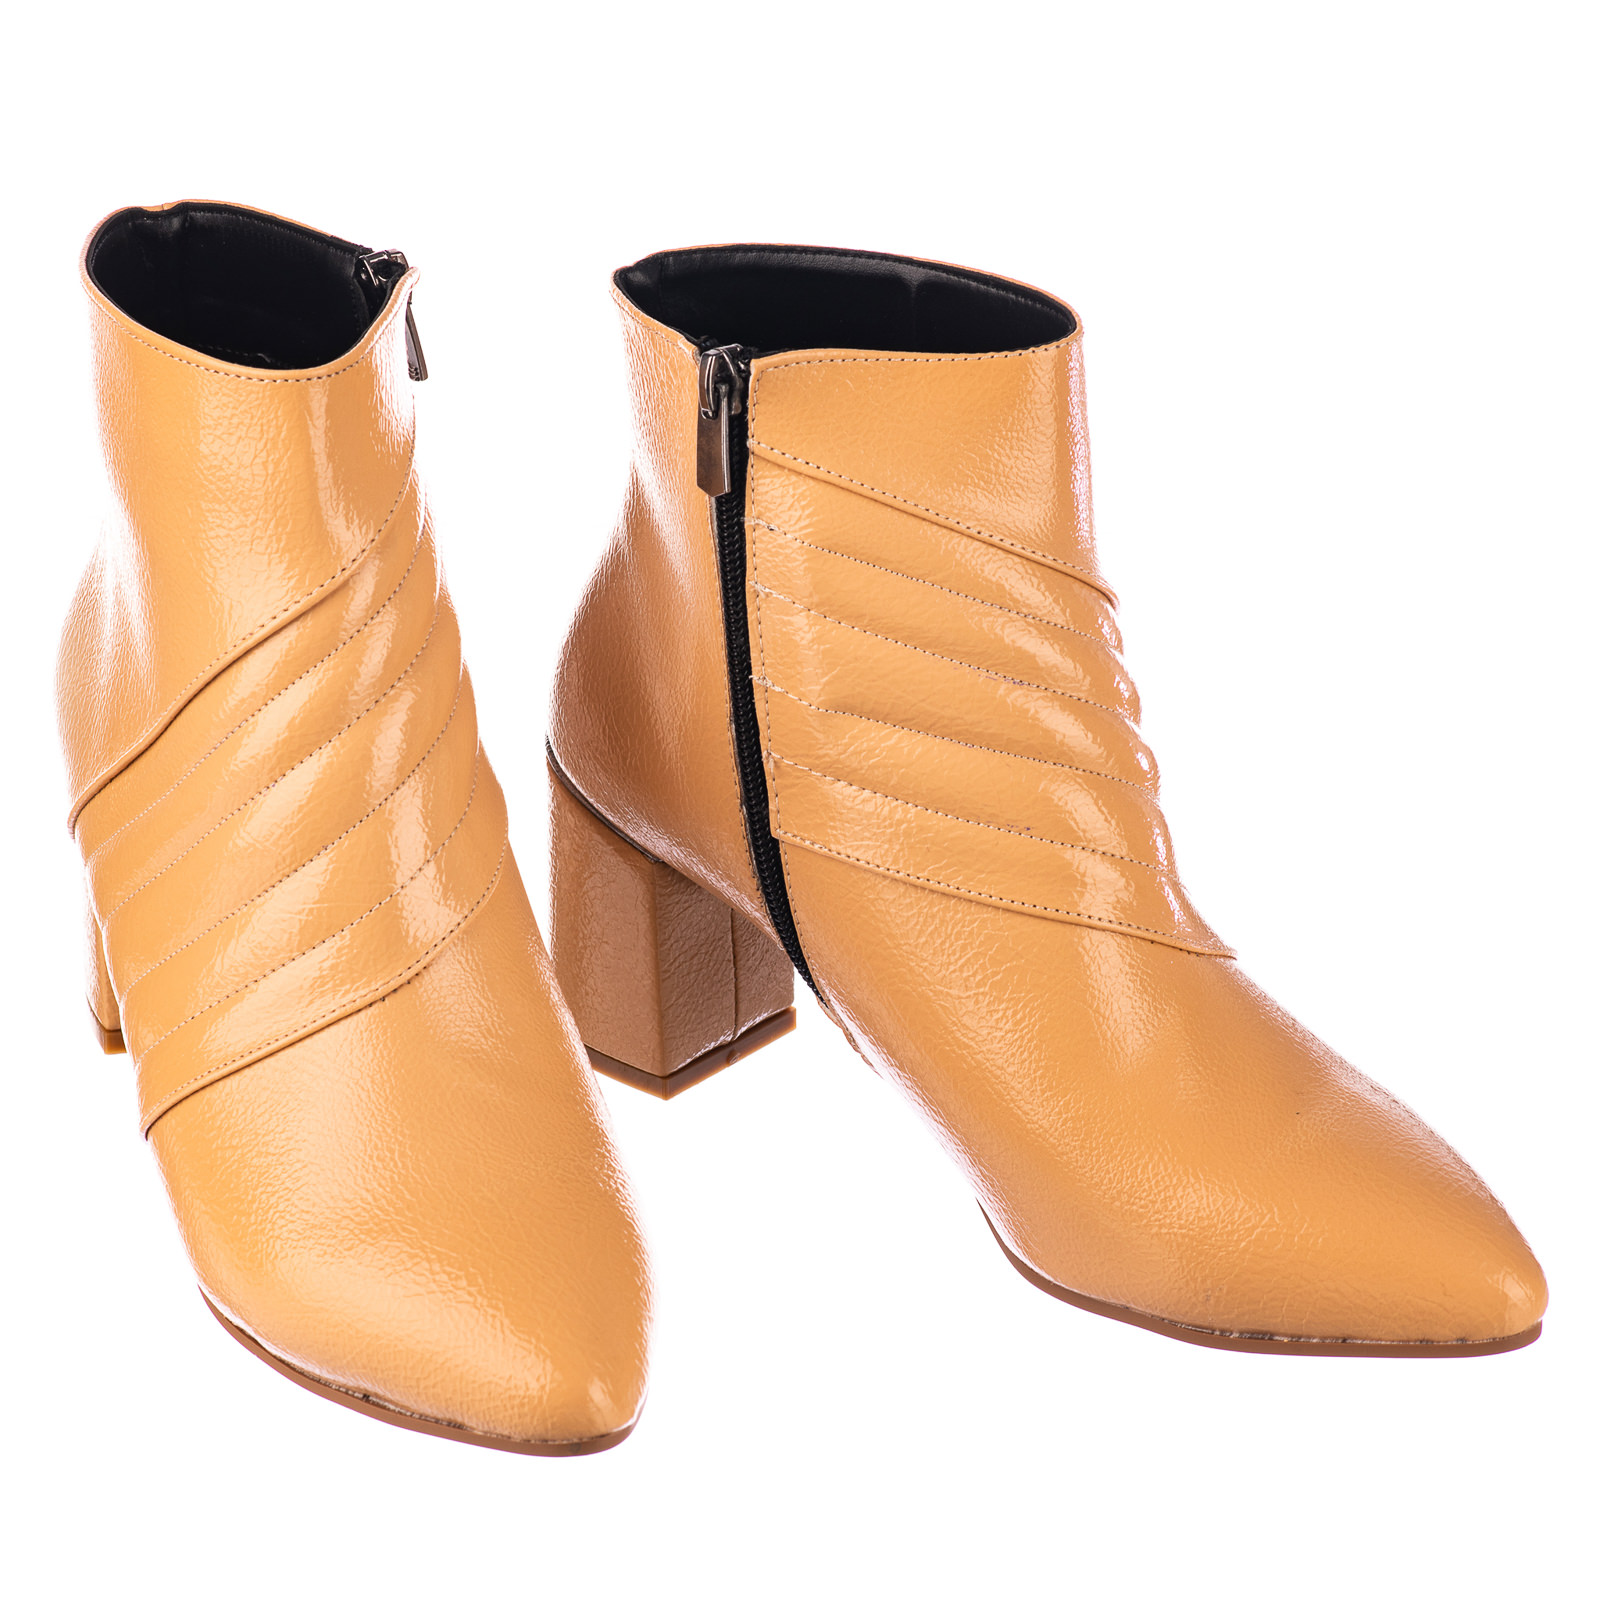 Women ankle boots B728 - BEIGE